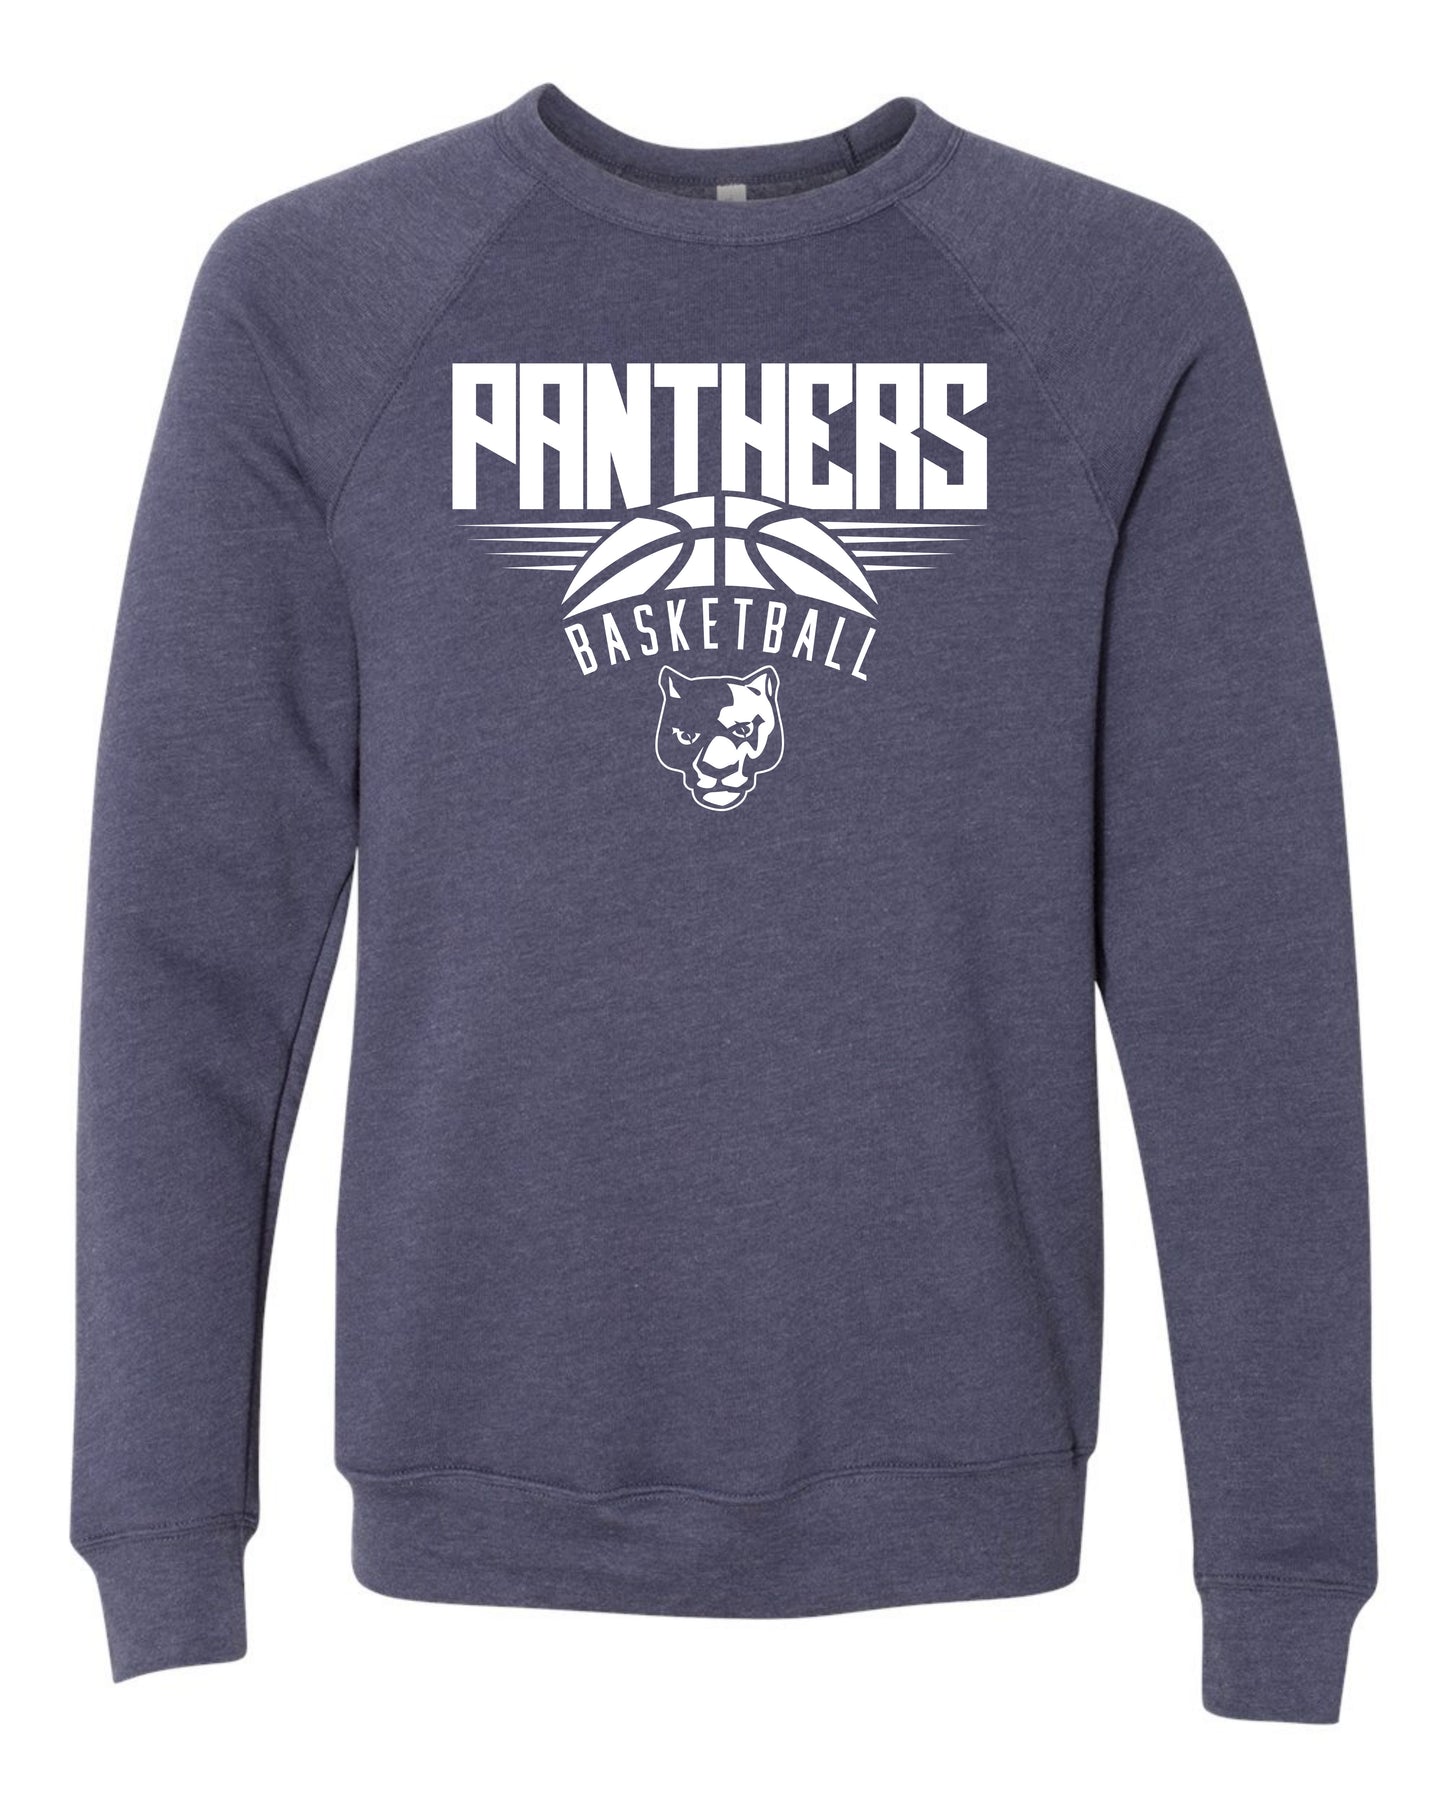 Panthers Basketball - Youth Sweatshirt